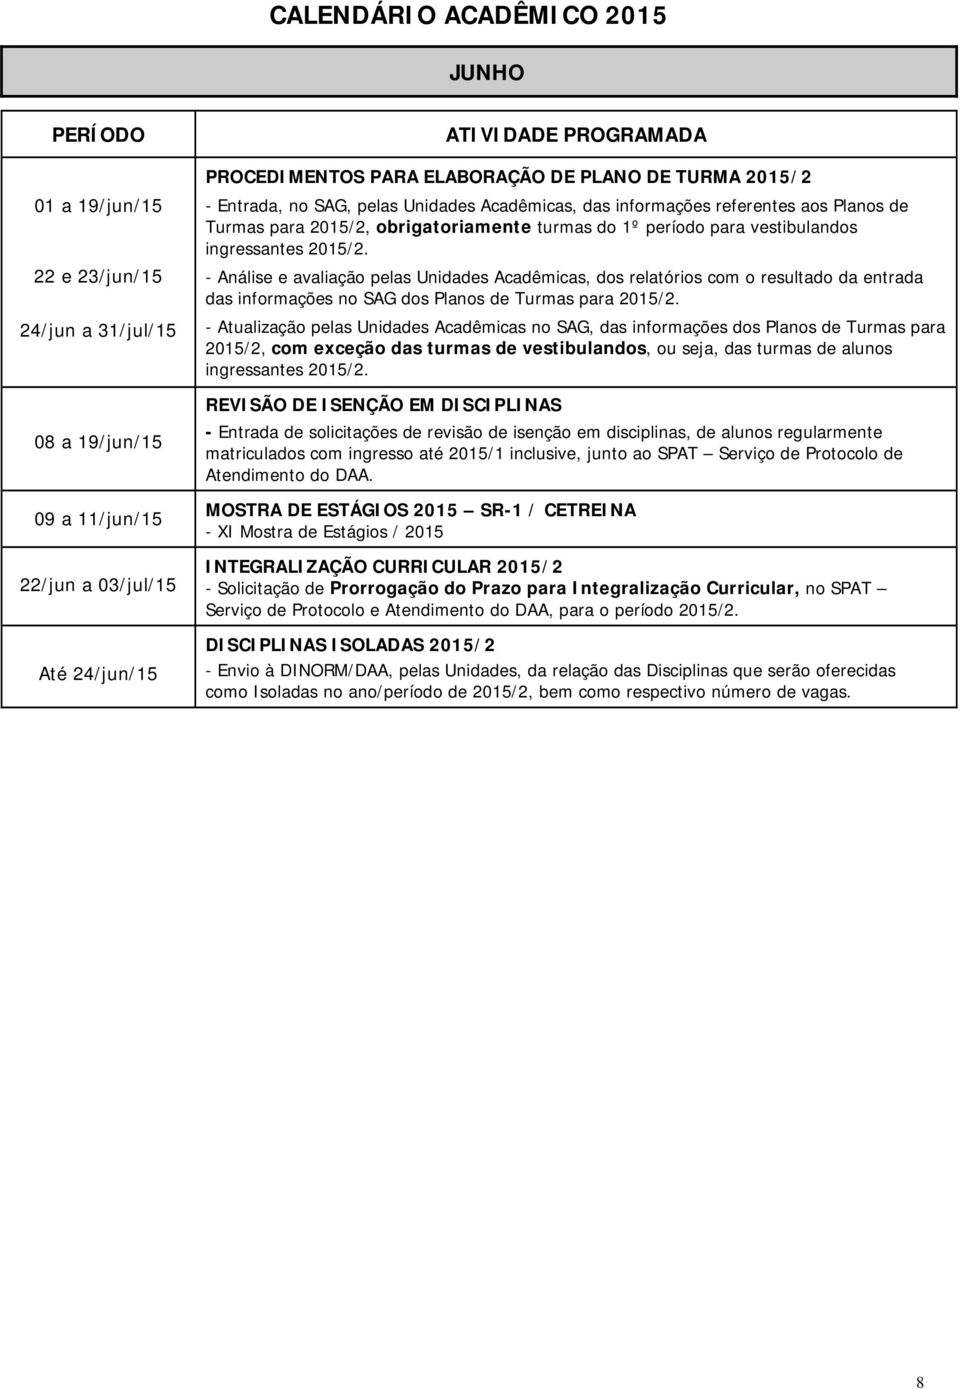 - Análise e avaliação pelas Unidades Acadêmicas, dos relatórios com o resultado da entrada das informações no SAG dos Planos de Turmas para 2015/2.